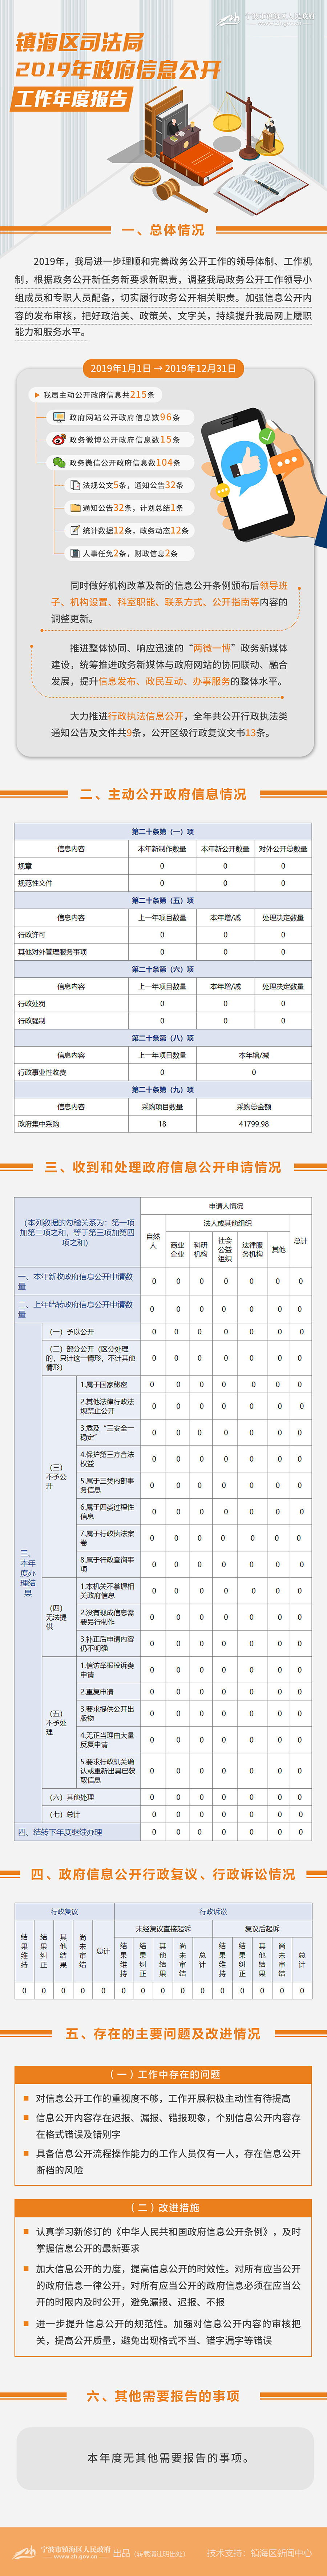 镇海区司法局2019年政府信息公开工作年度报告（图解）.JPG